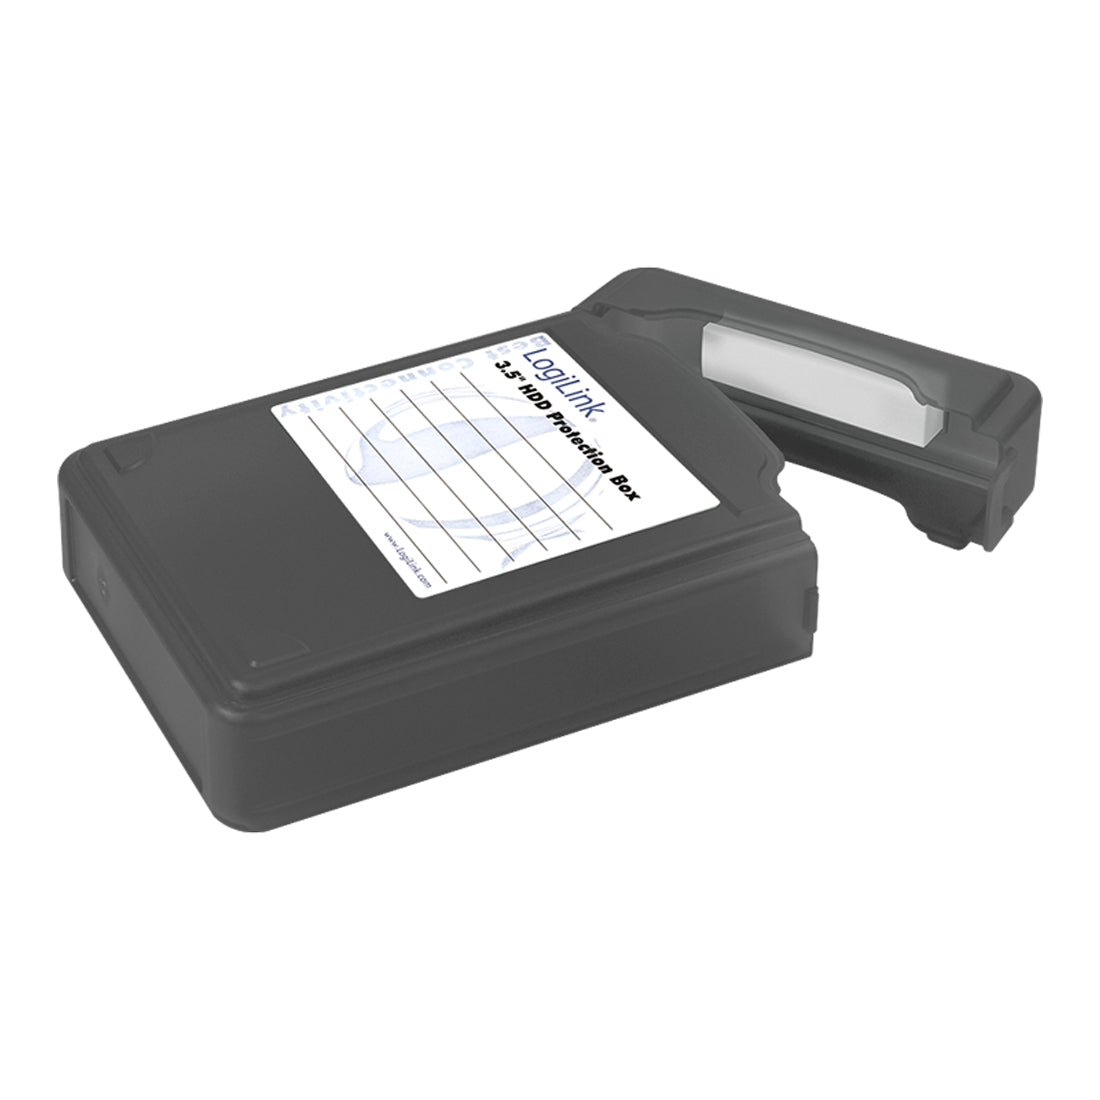 Festplatten Schutzbox 3,5" HDD Datenschutz Aufbewahrung Transport Archiv Hülle